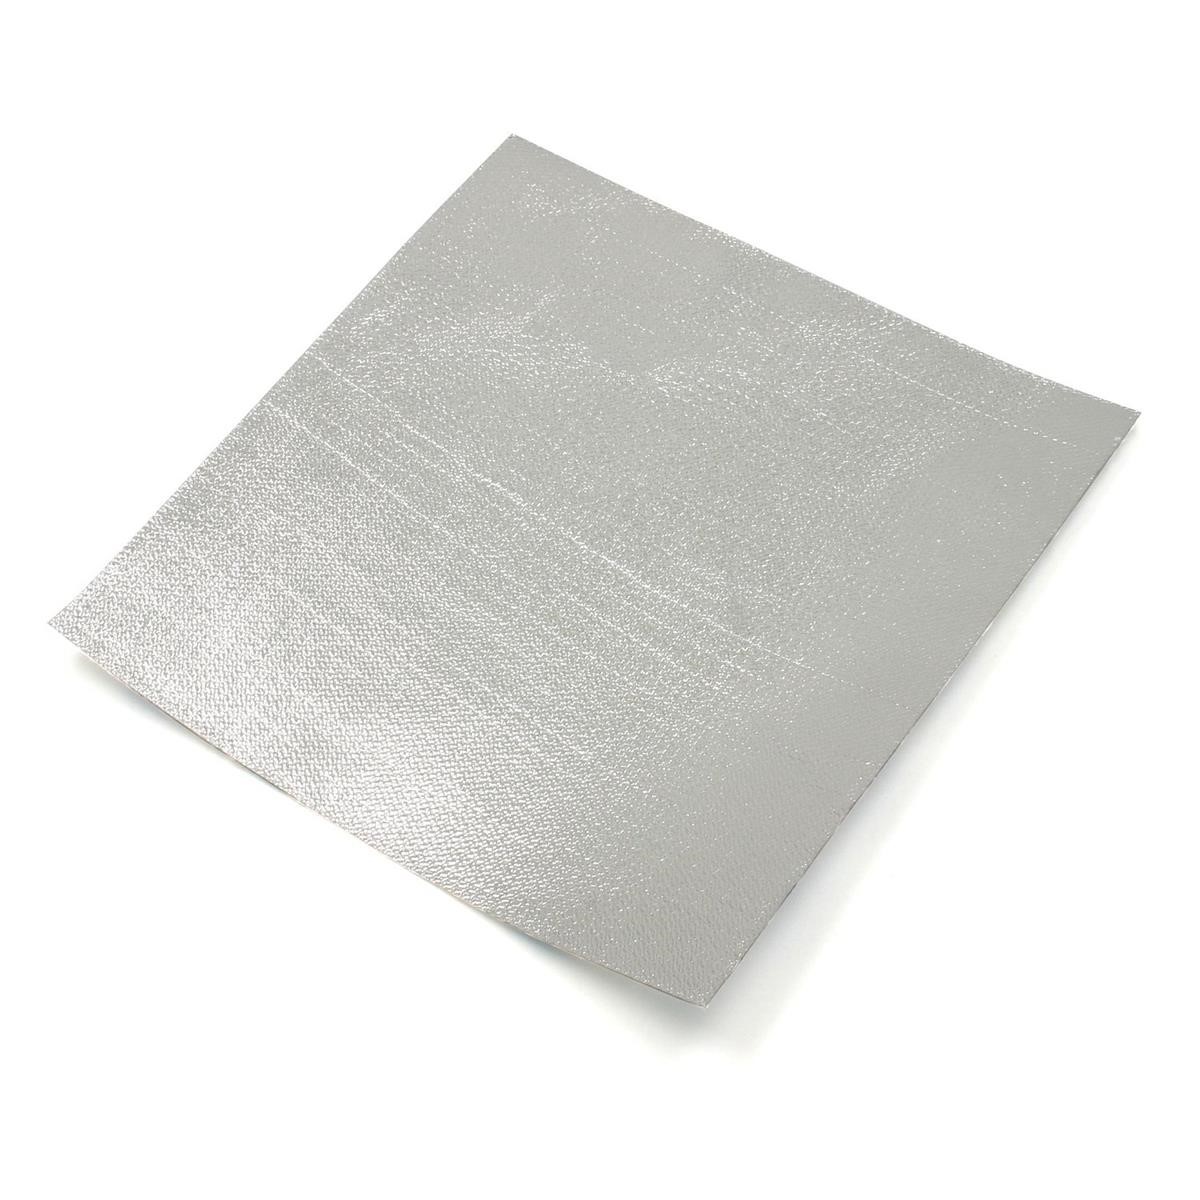 DRC Heat Protection Foil  25 x 24.5 cm